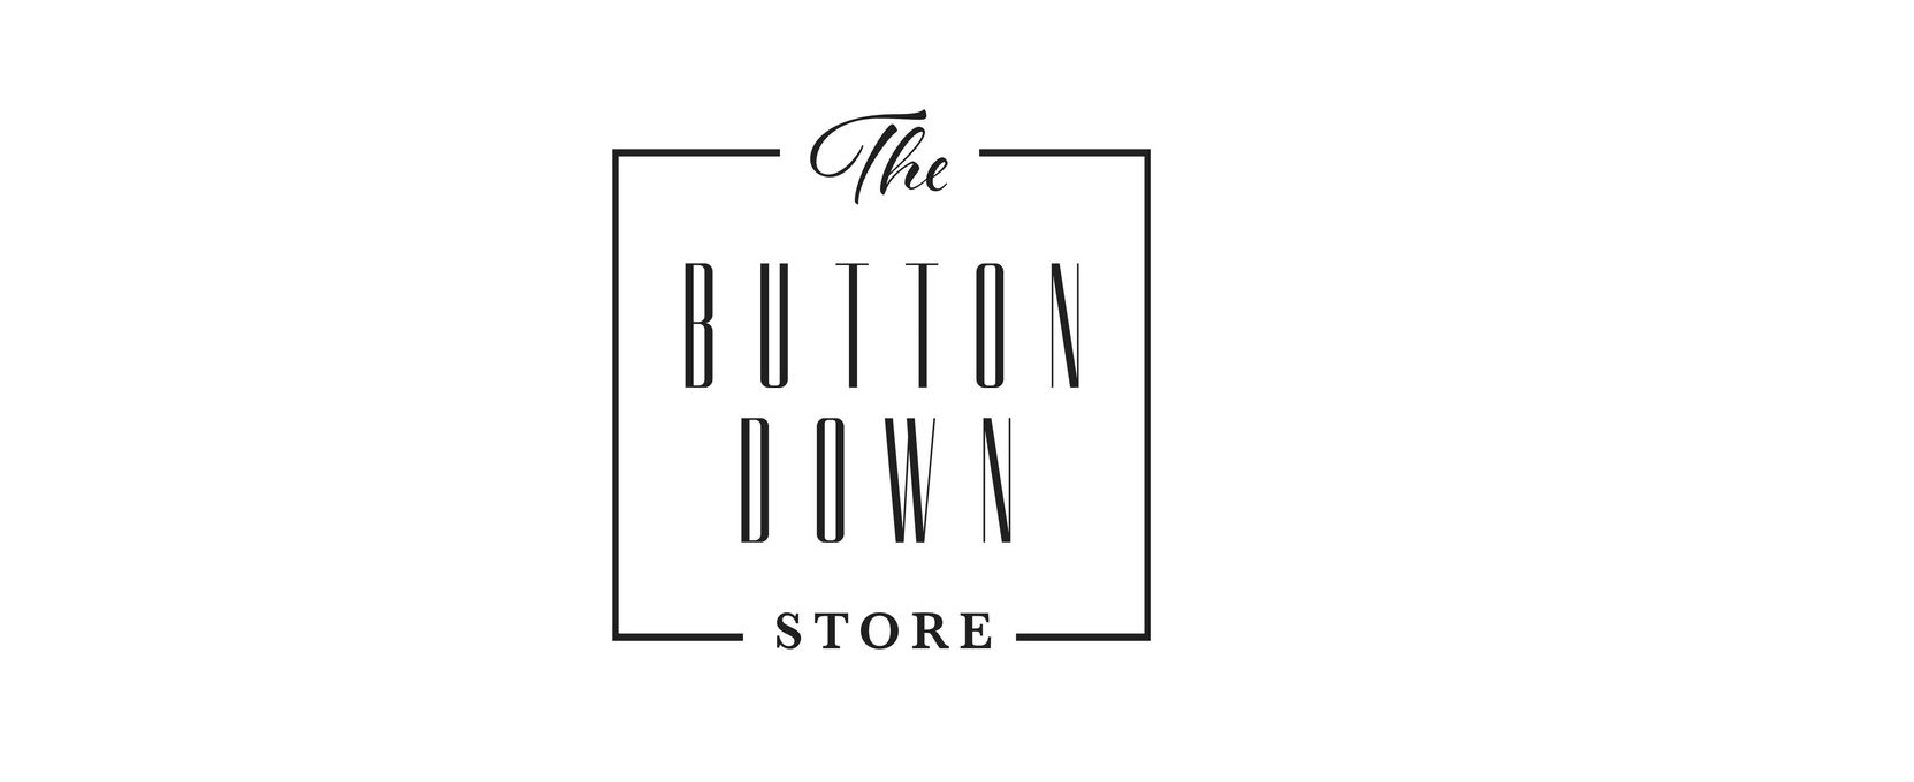 The Buttondown Store